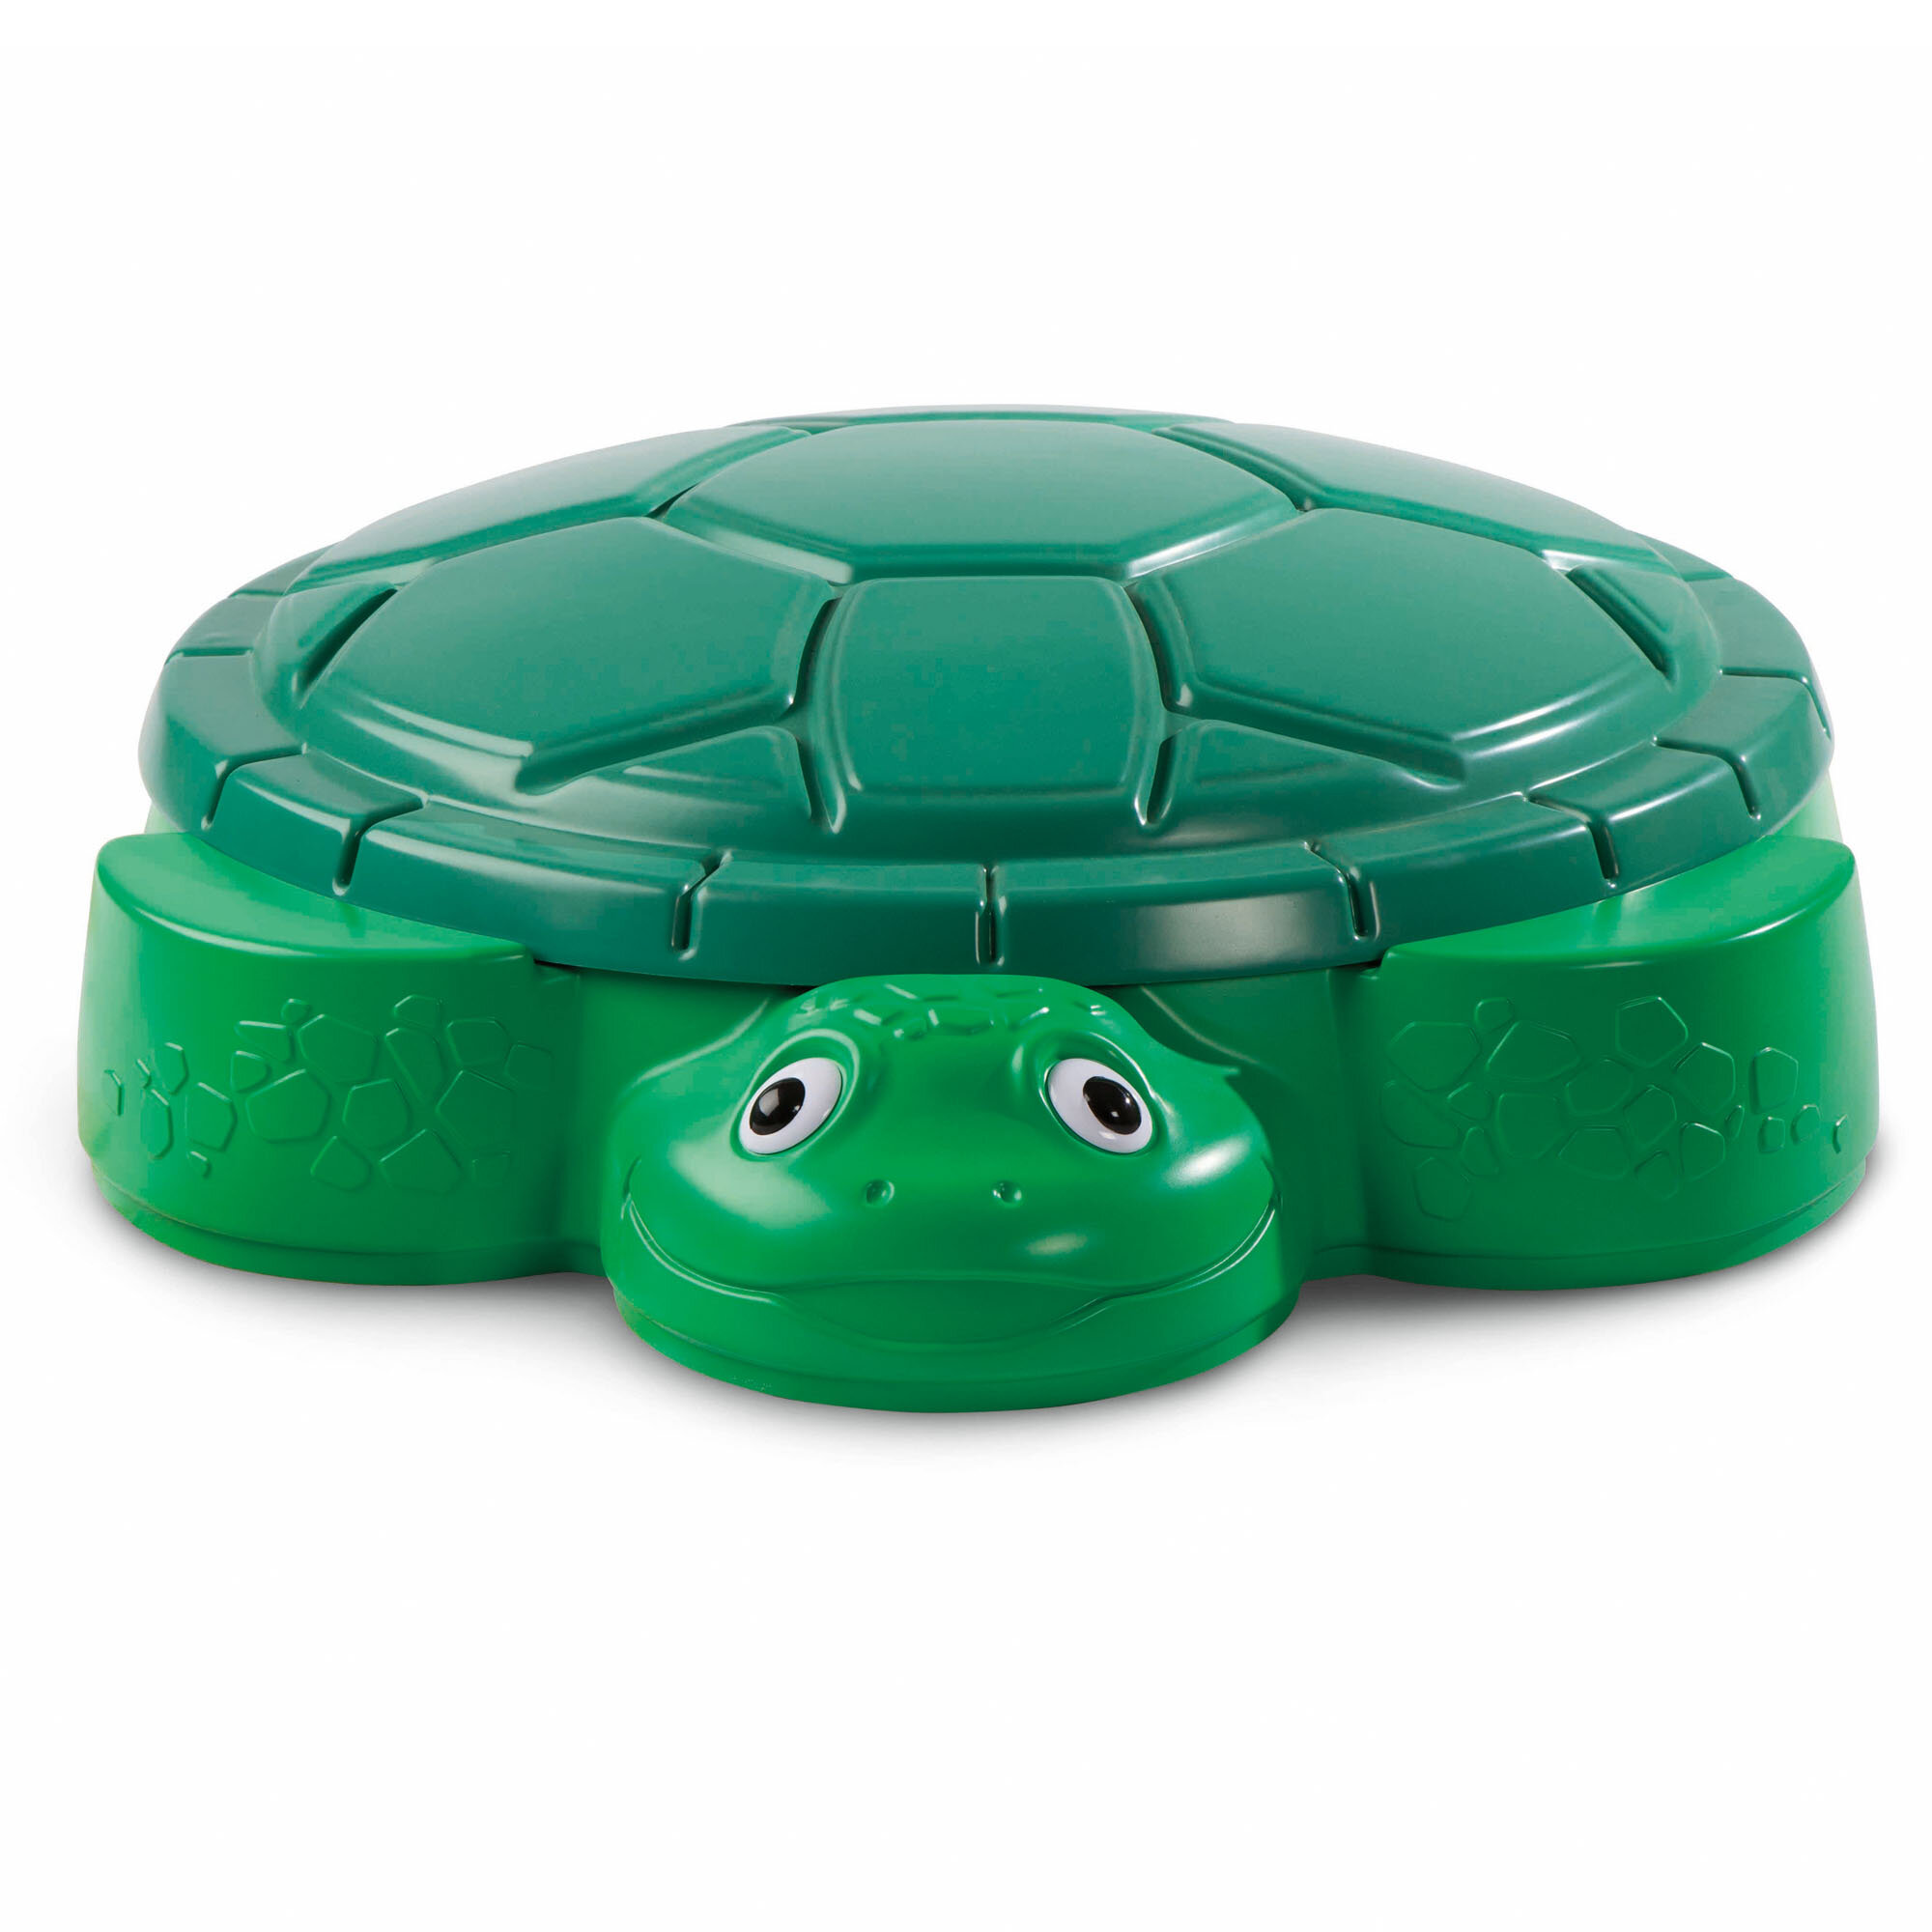 used turtle sandbox